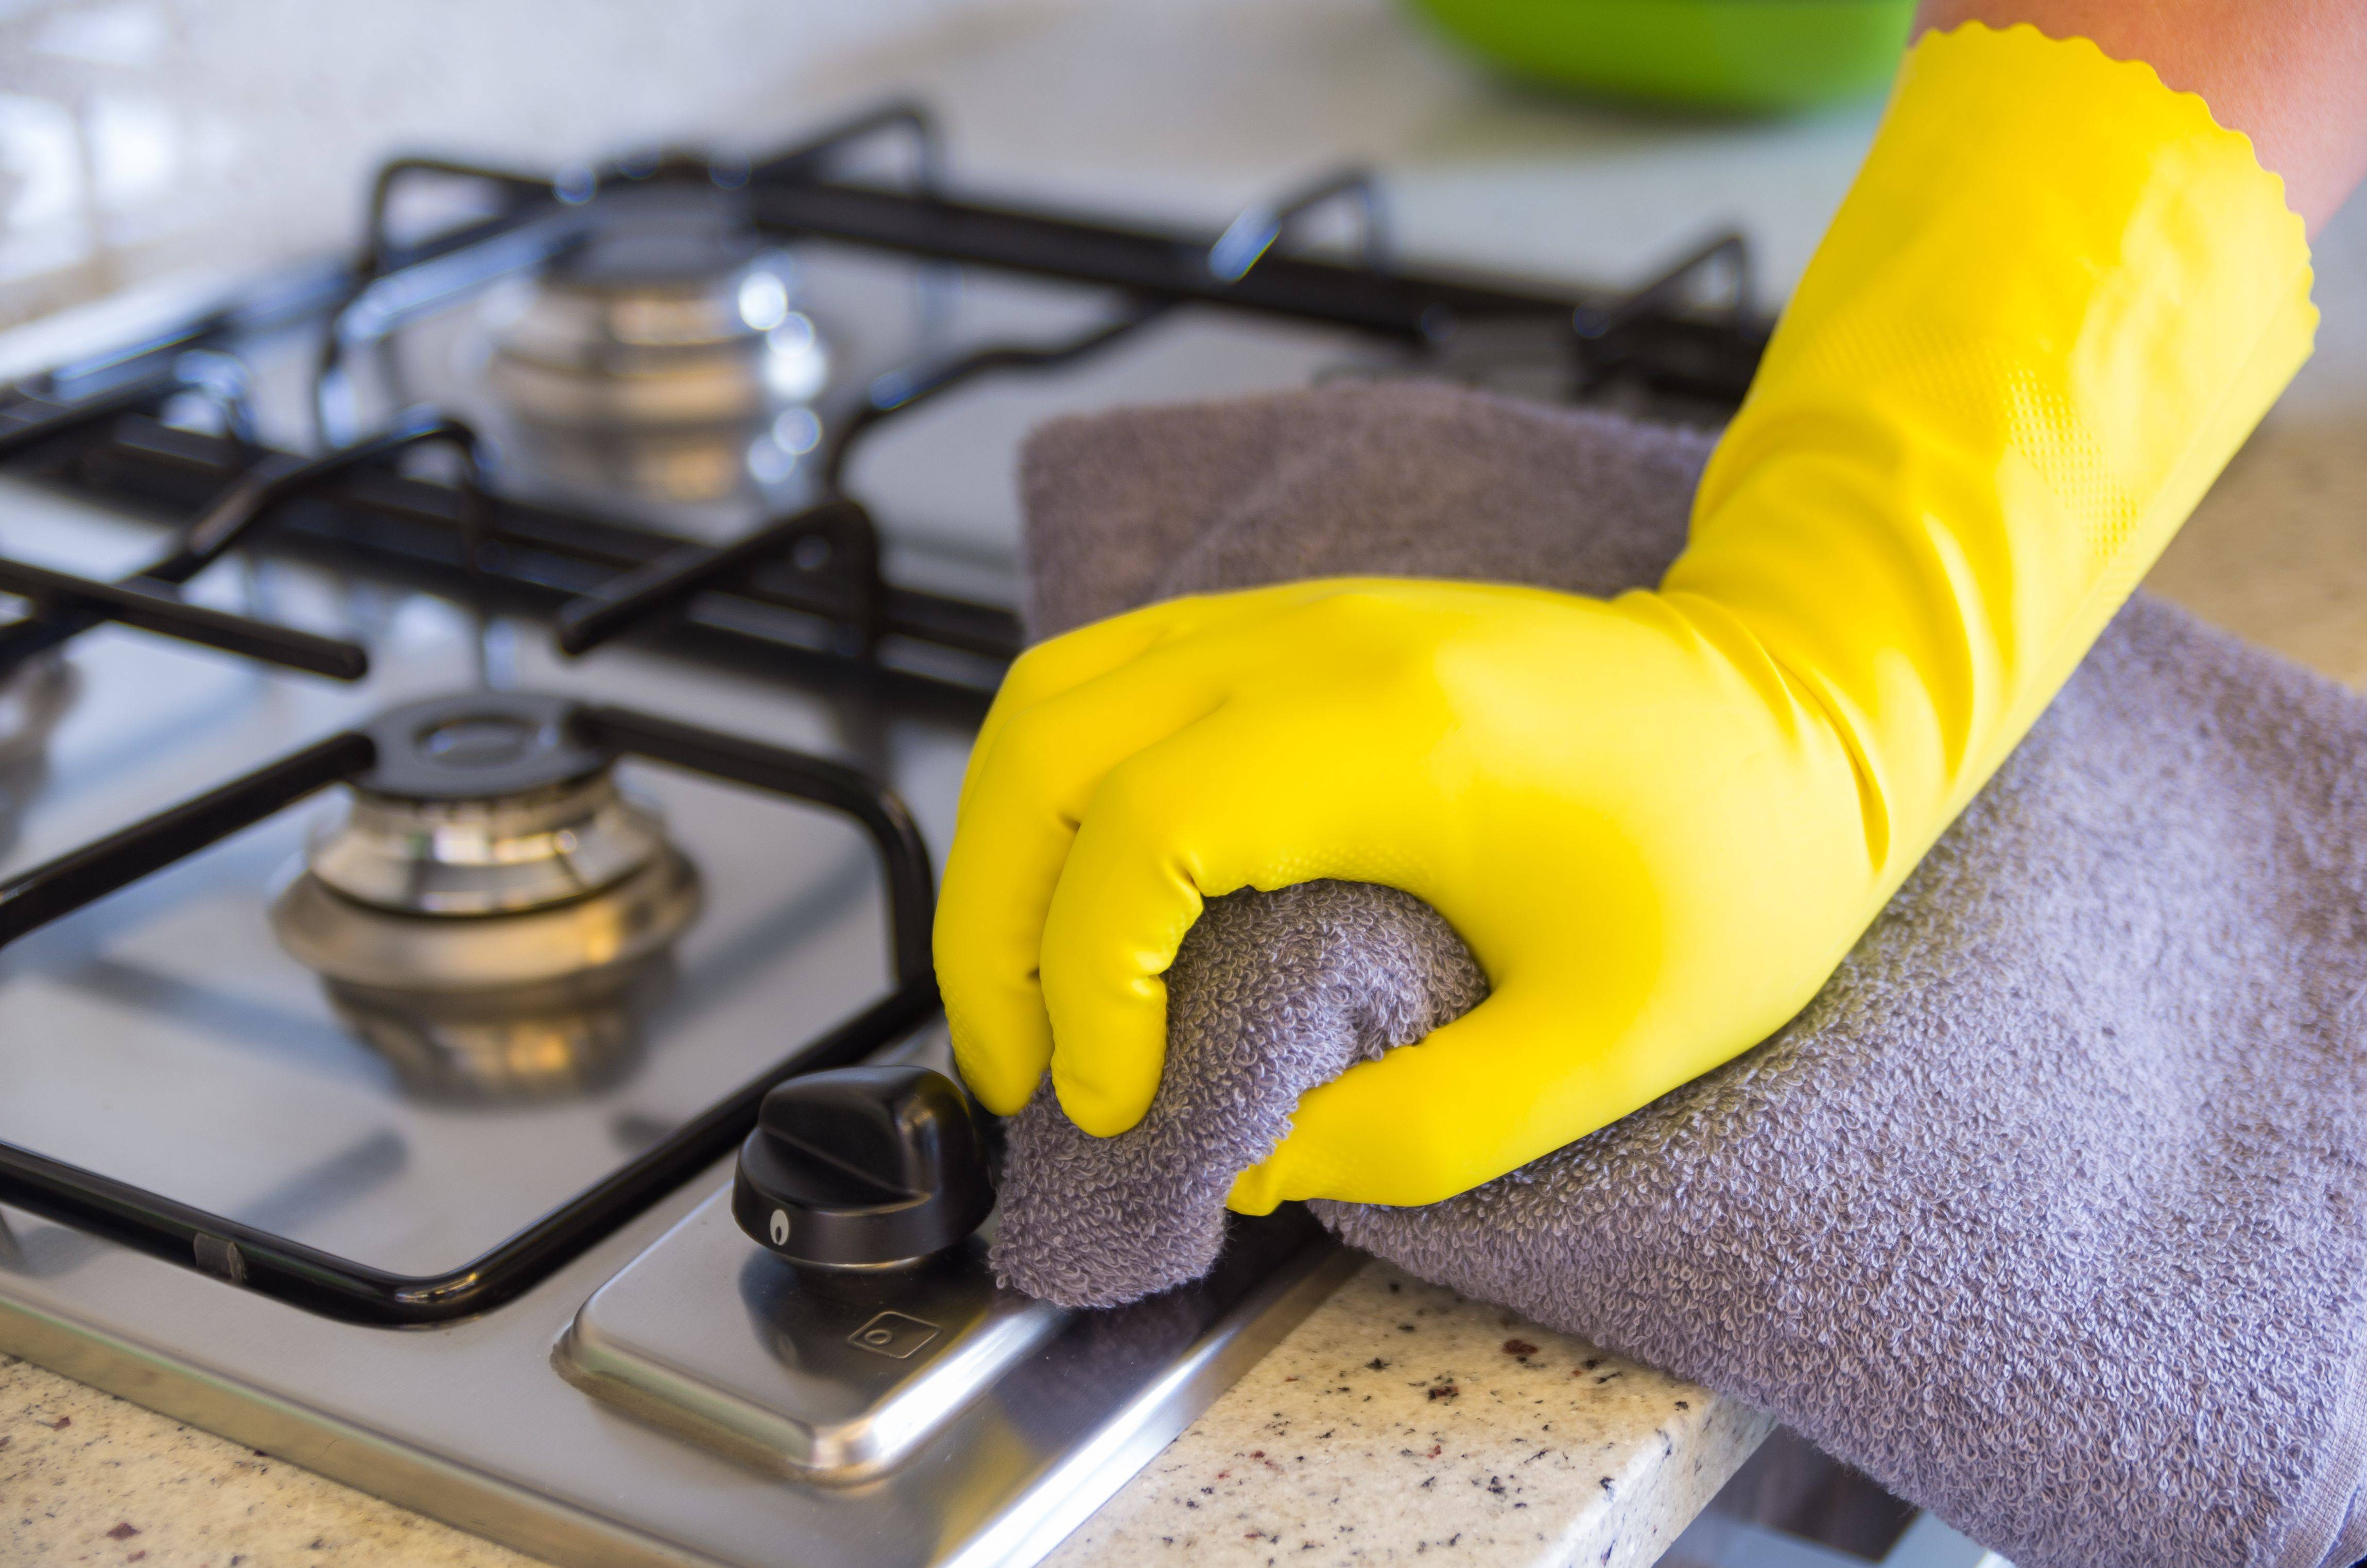 Как чистить и чем отмыть индукционную плиту и варочную панель